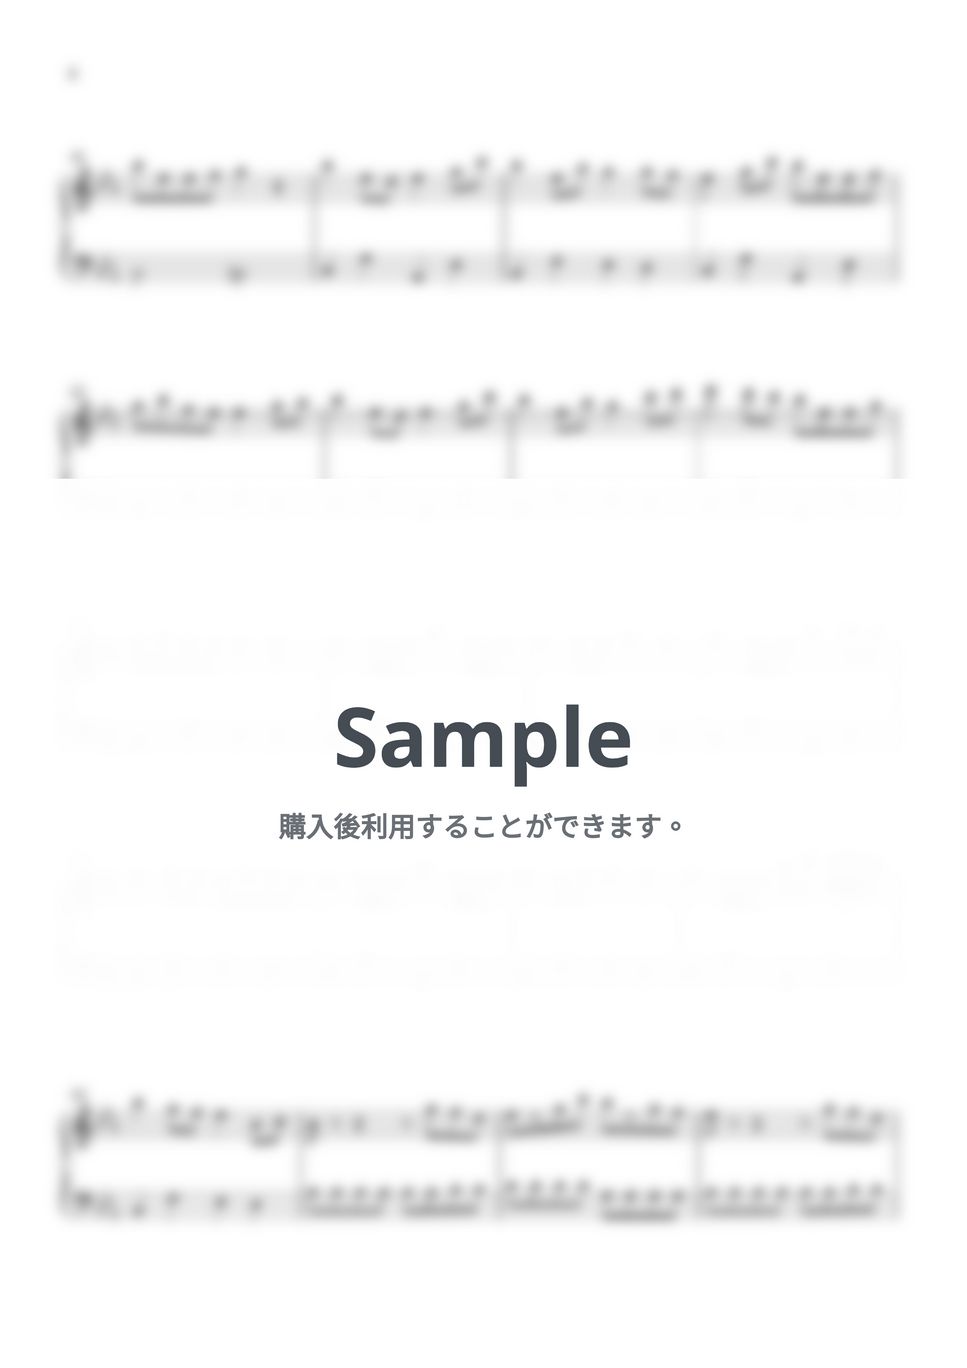 ロクデナシ - ただ声一つ (ピアノ楽譜 / 簡単) by Piano Lovers. jp